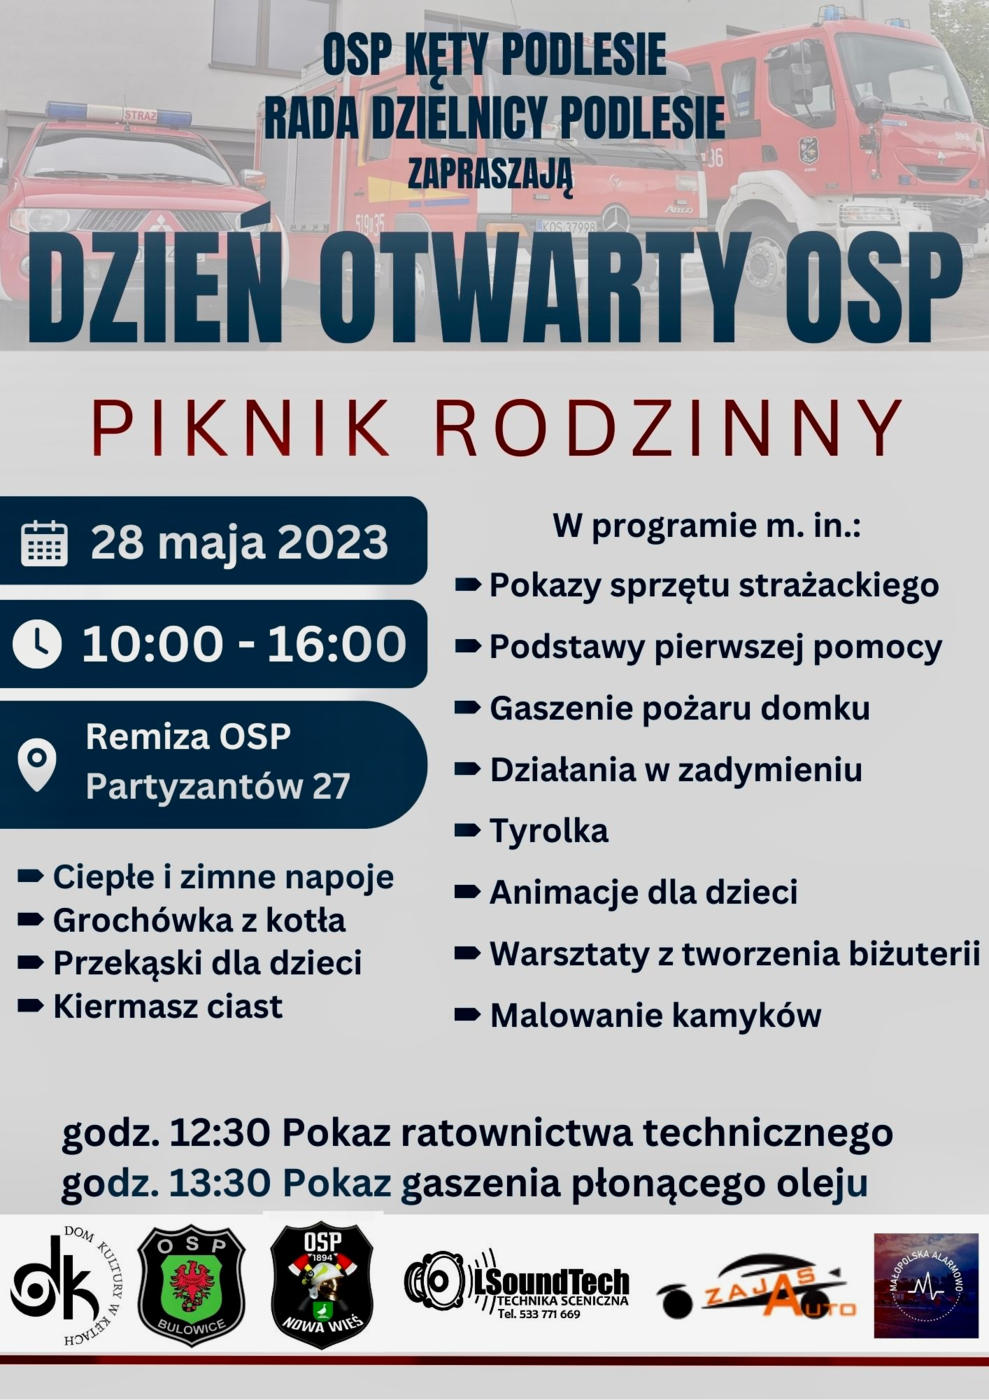 W niedzielę 28 maja druhowie z OSP w Kętach Podlesiu i zarząd dzielnicy Kęty Podlesie zapraszają na Dzień Otwarty OSP i piknik rodzinny. 